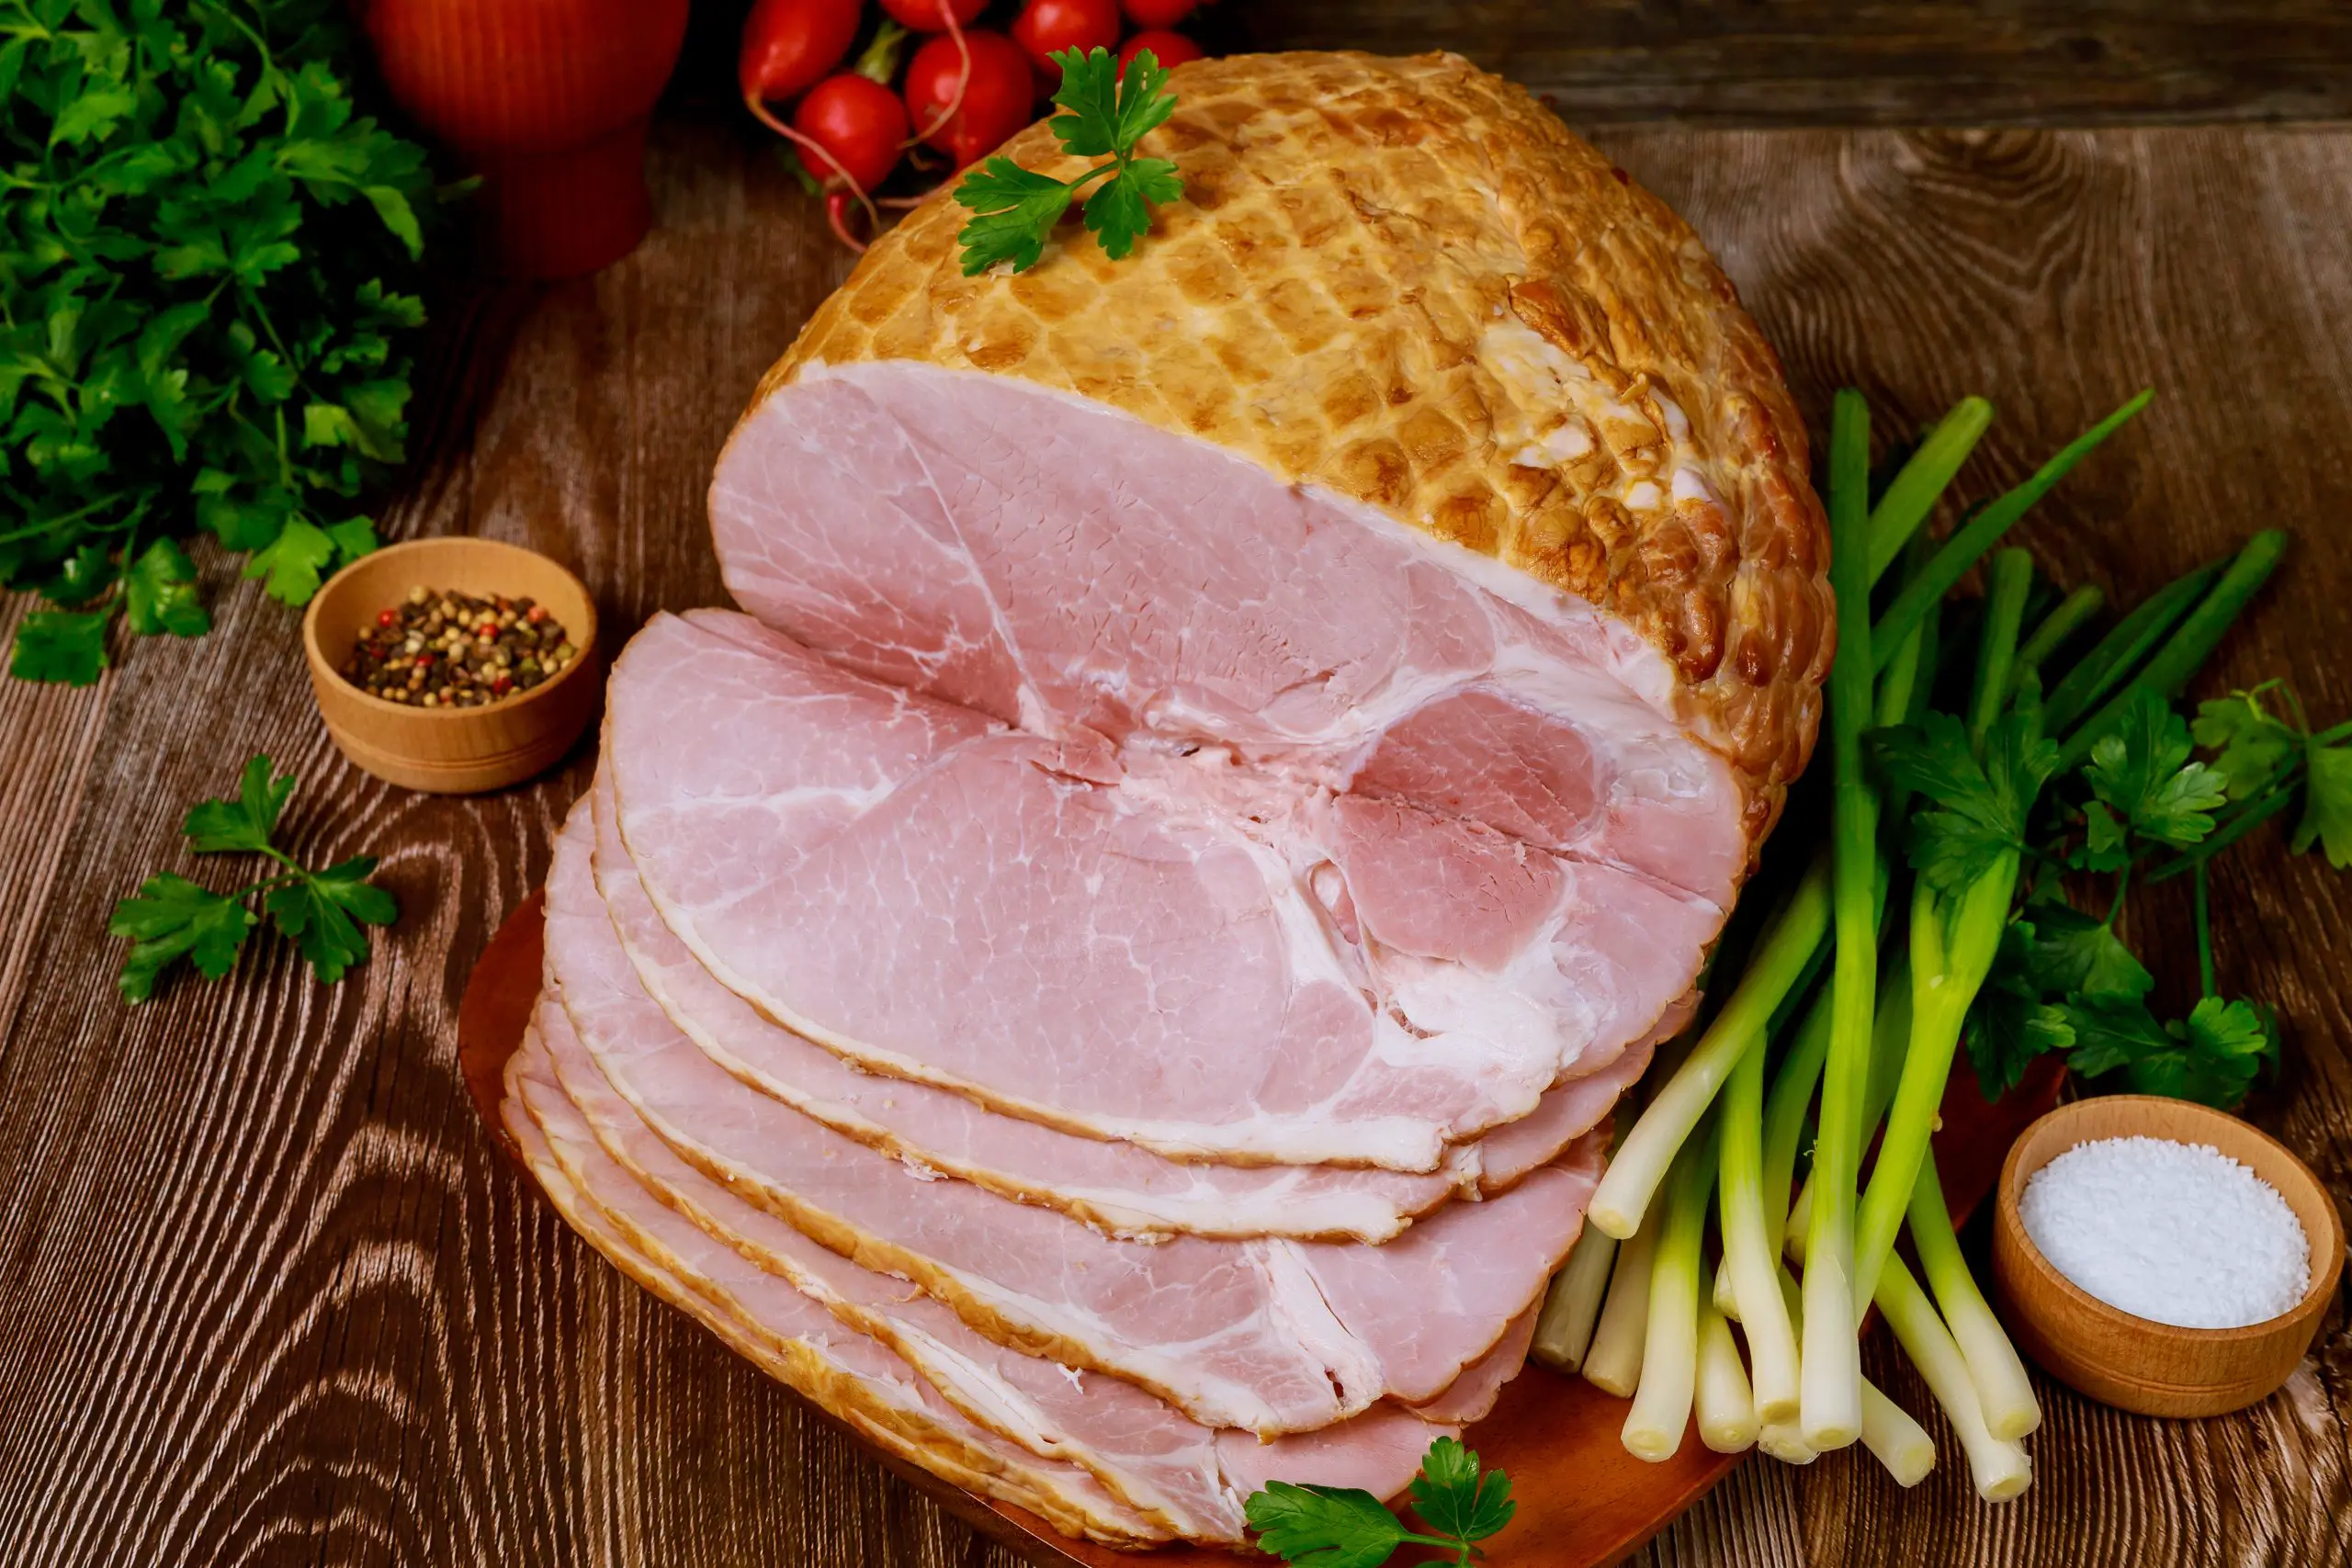 How Long Should You Cook a Ham